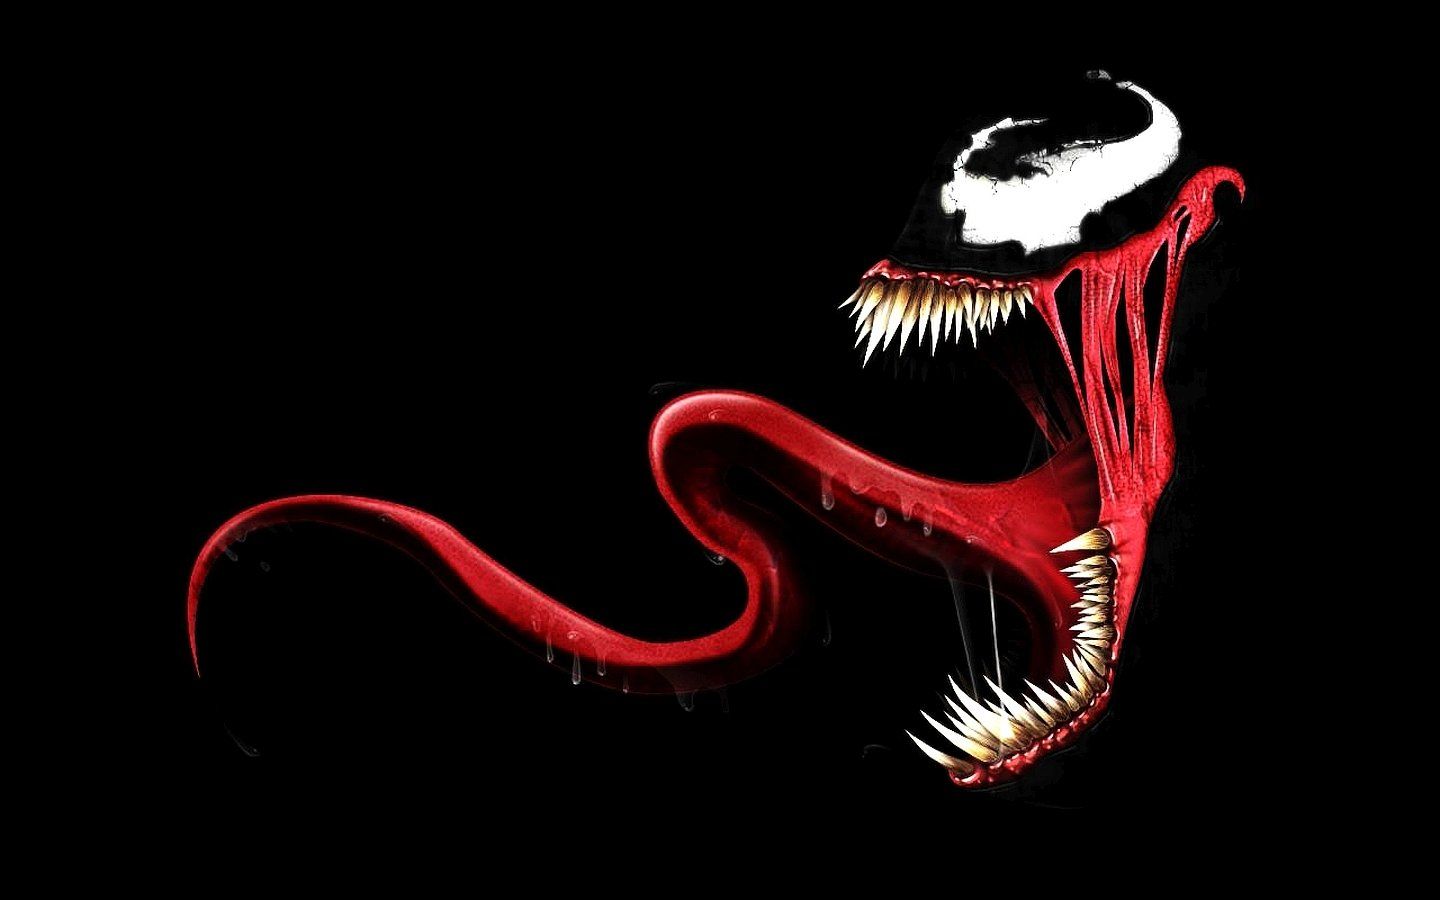 Fondos de pantalla de Venom - FondosMil